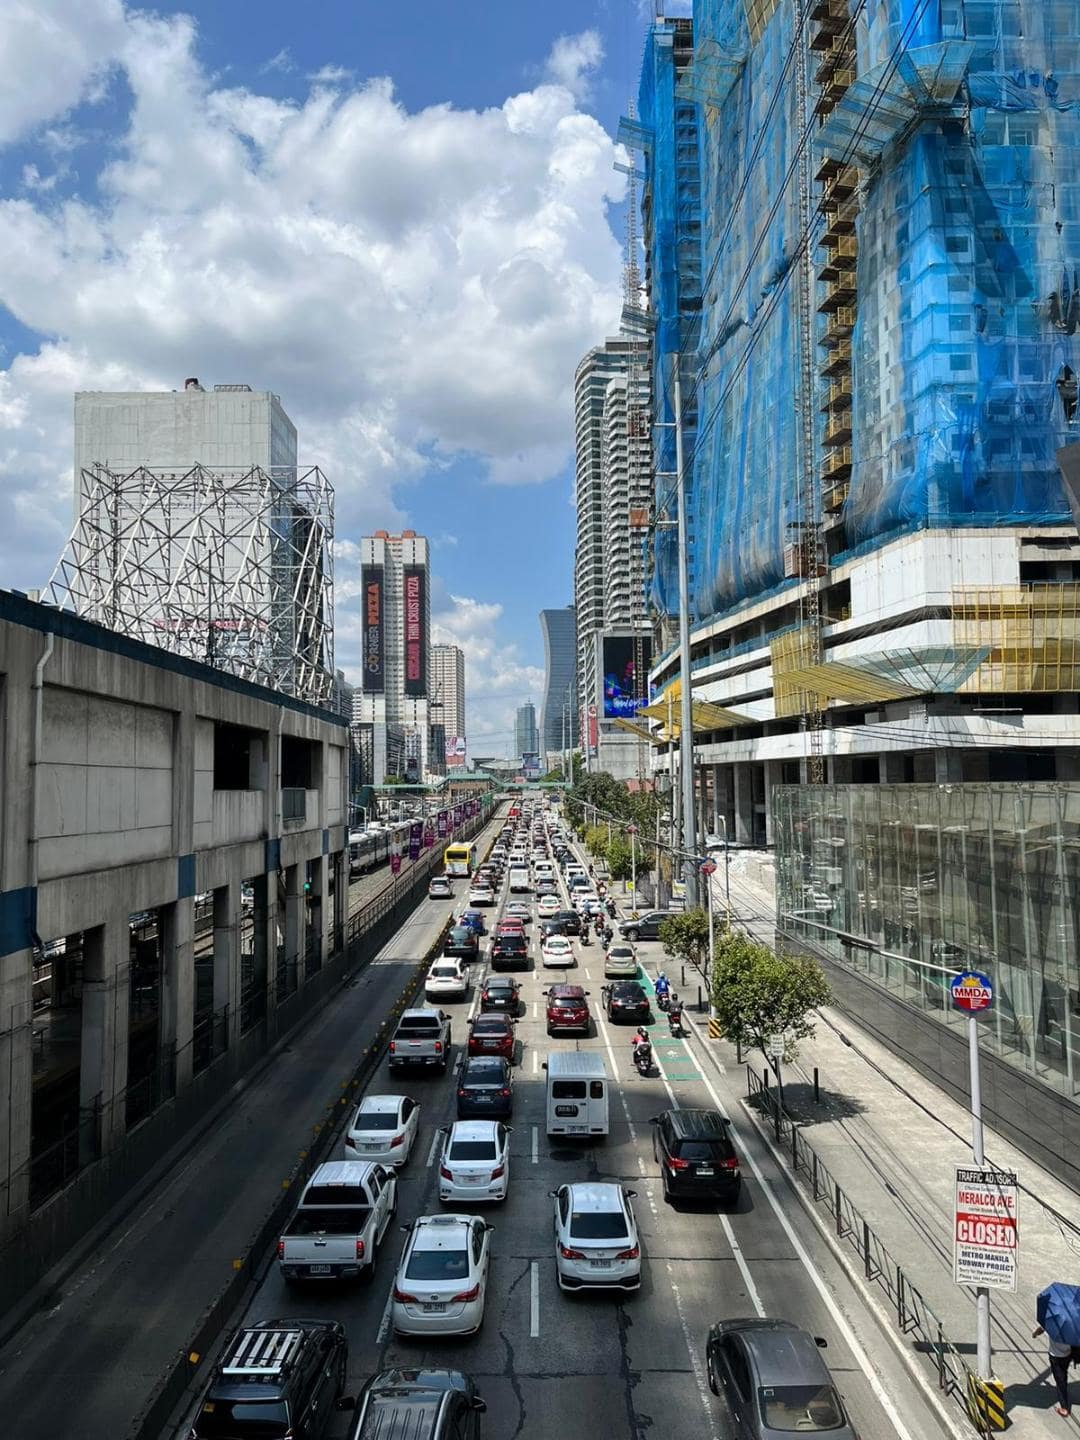 Kolóny áut v Manile.